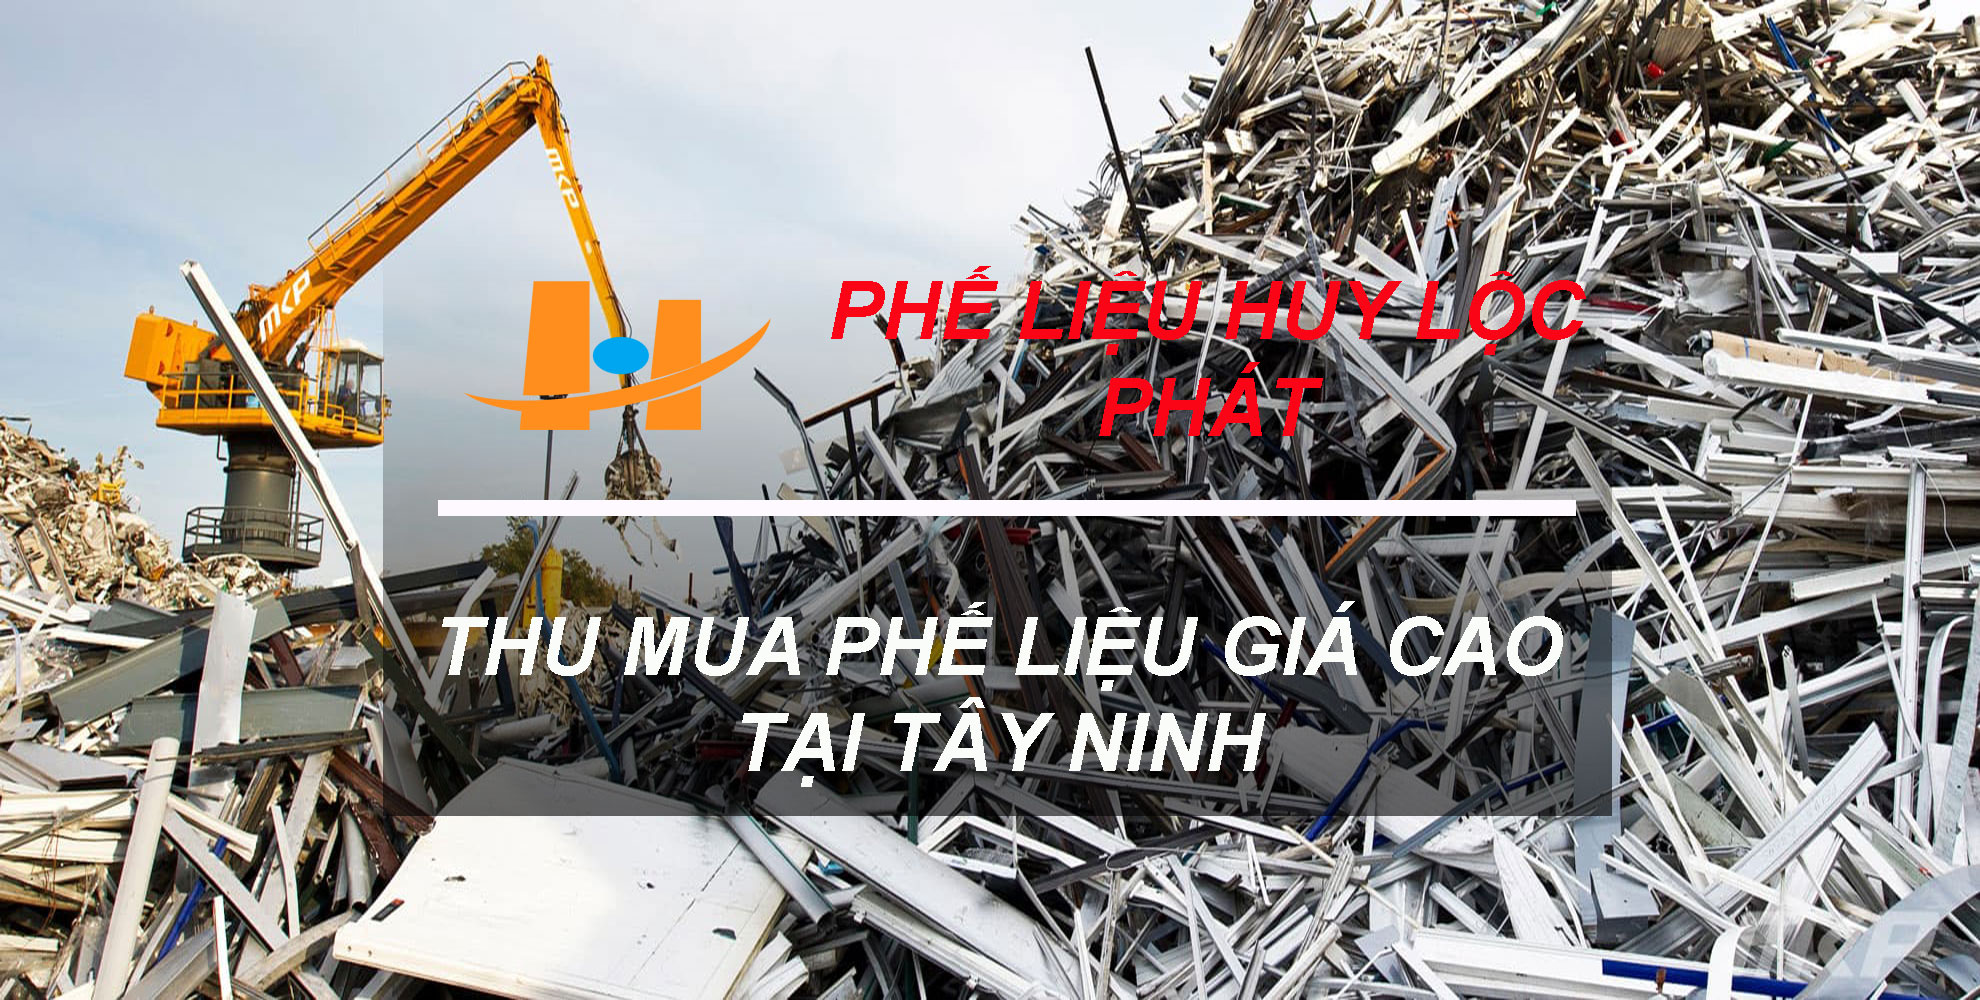 Thu mua phế liệu giá cao tại Tây Ninh